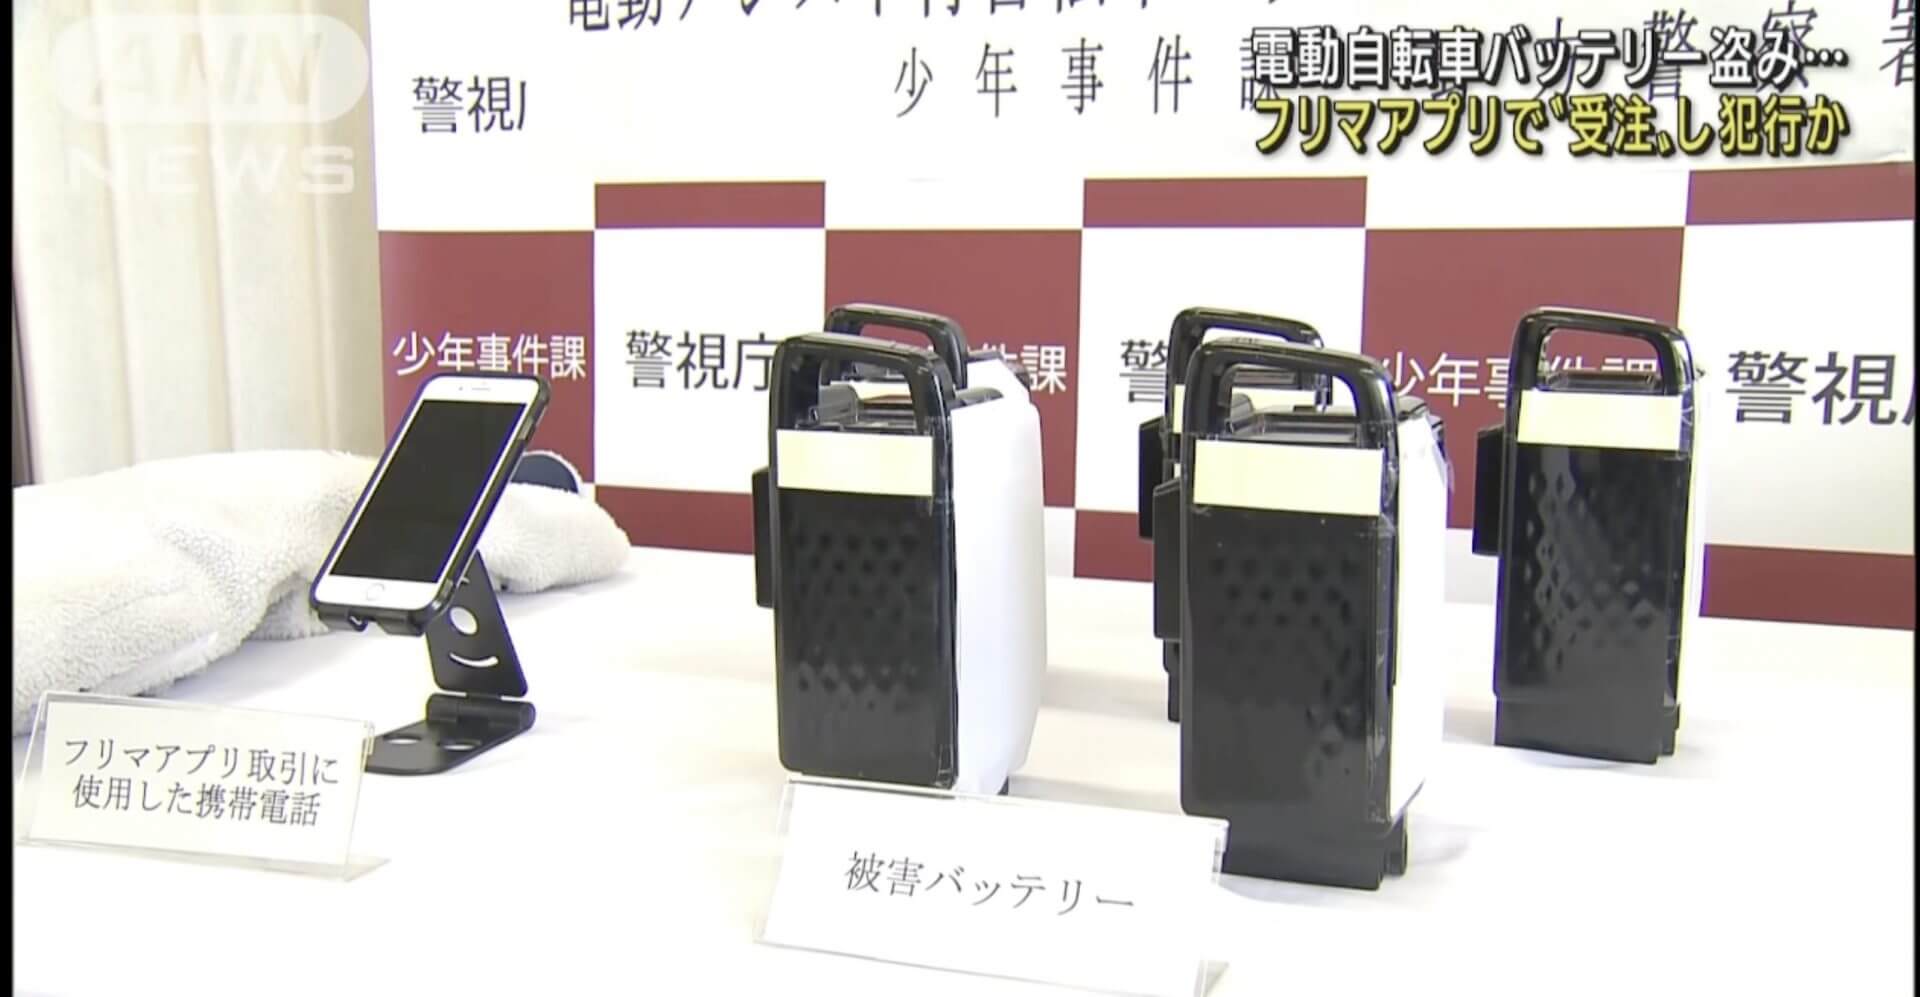 Jovem japonês furtava baterias de bicicleta por encomenda em Tóquio